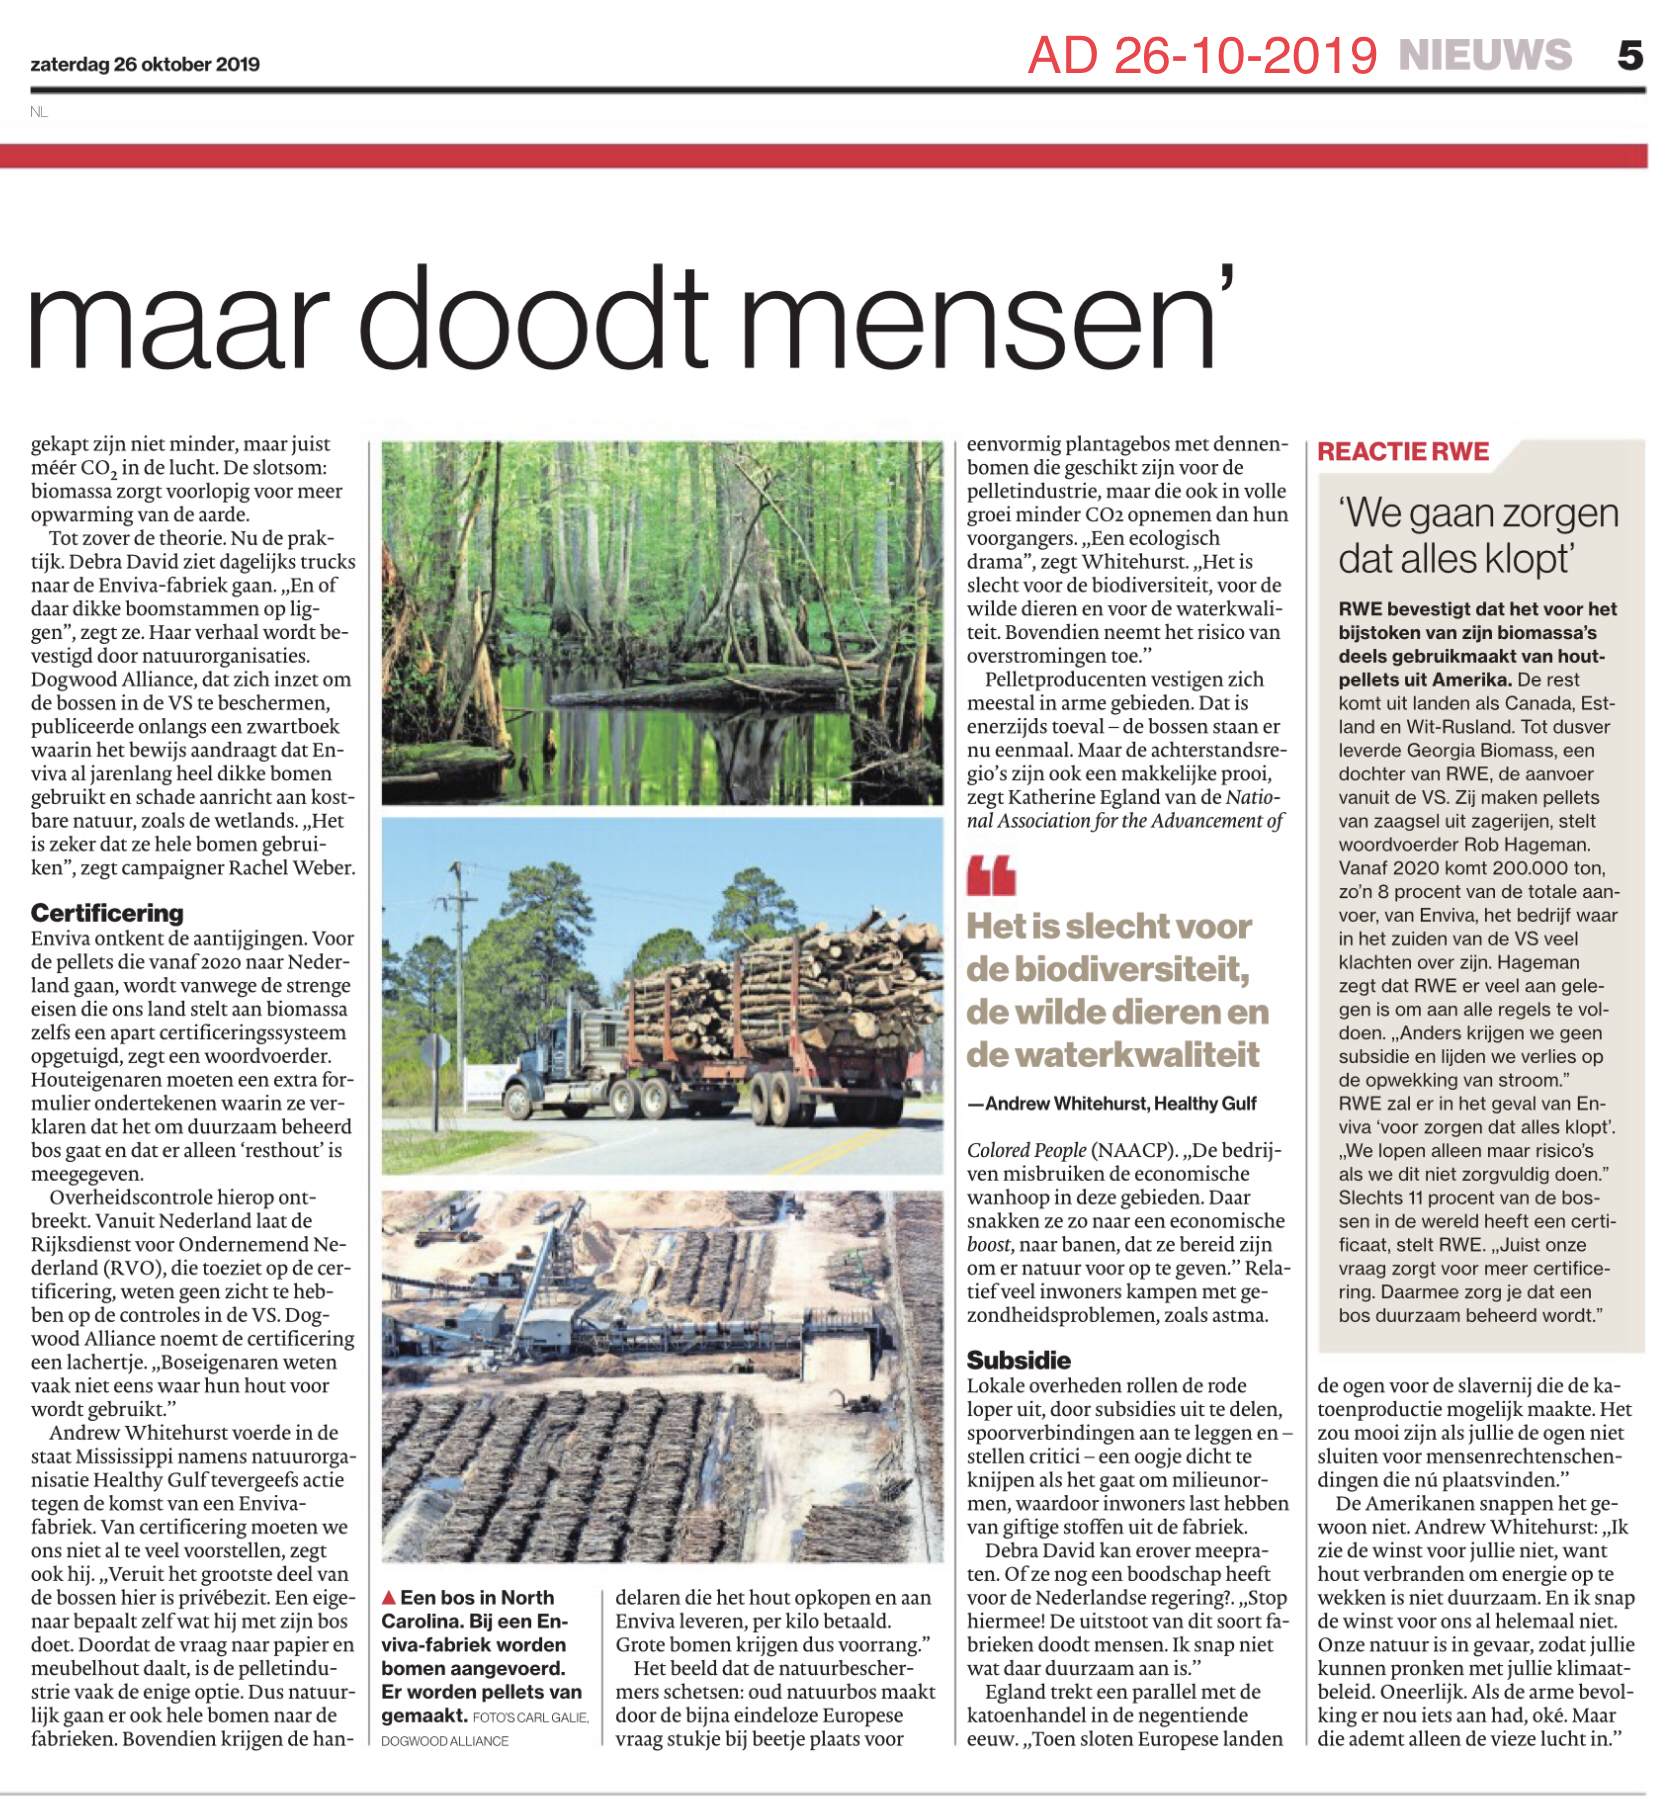 Amerikaans hout Nederlandse energie - deel 2